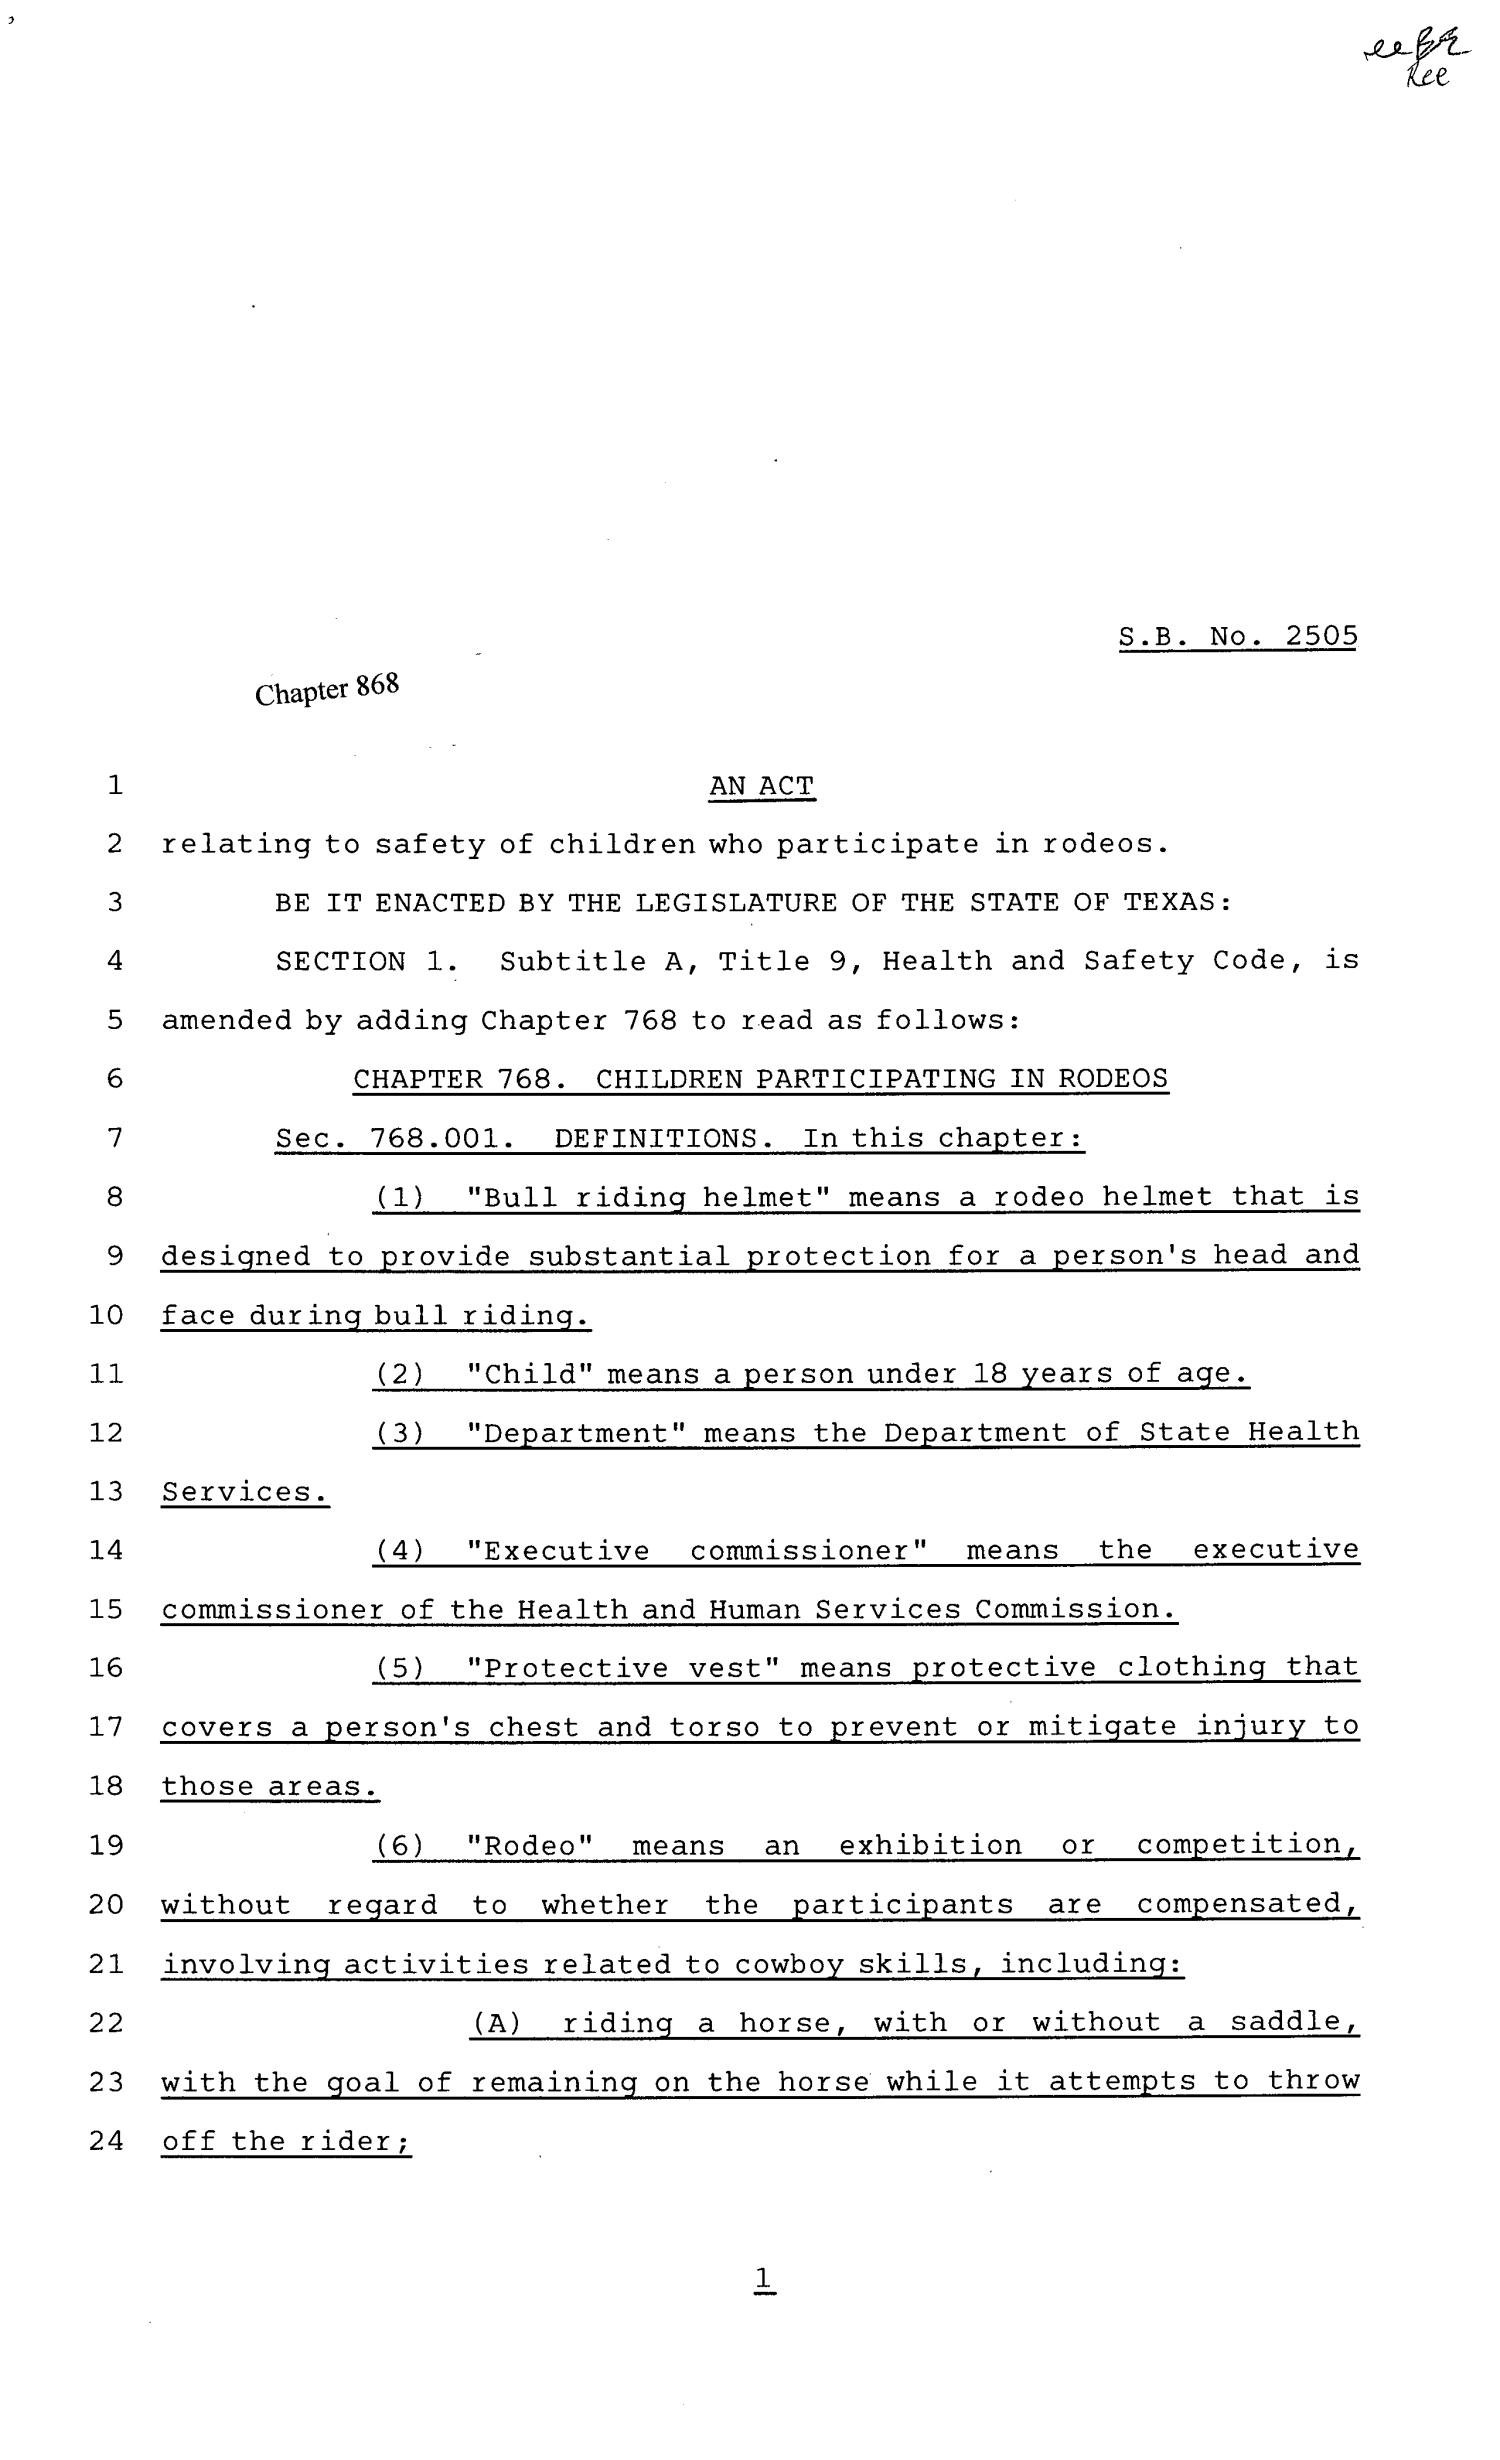 81st Texas Legislature, Senate Bill 2505, Chapter 868
                                                
                                                    [Sequence #]: 1 of 4
                                                